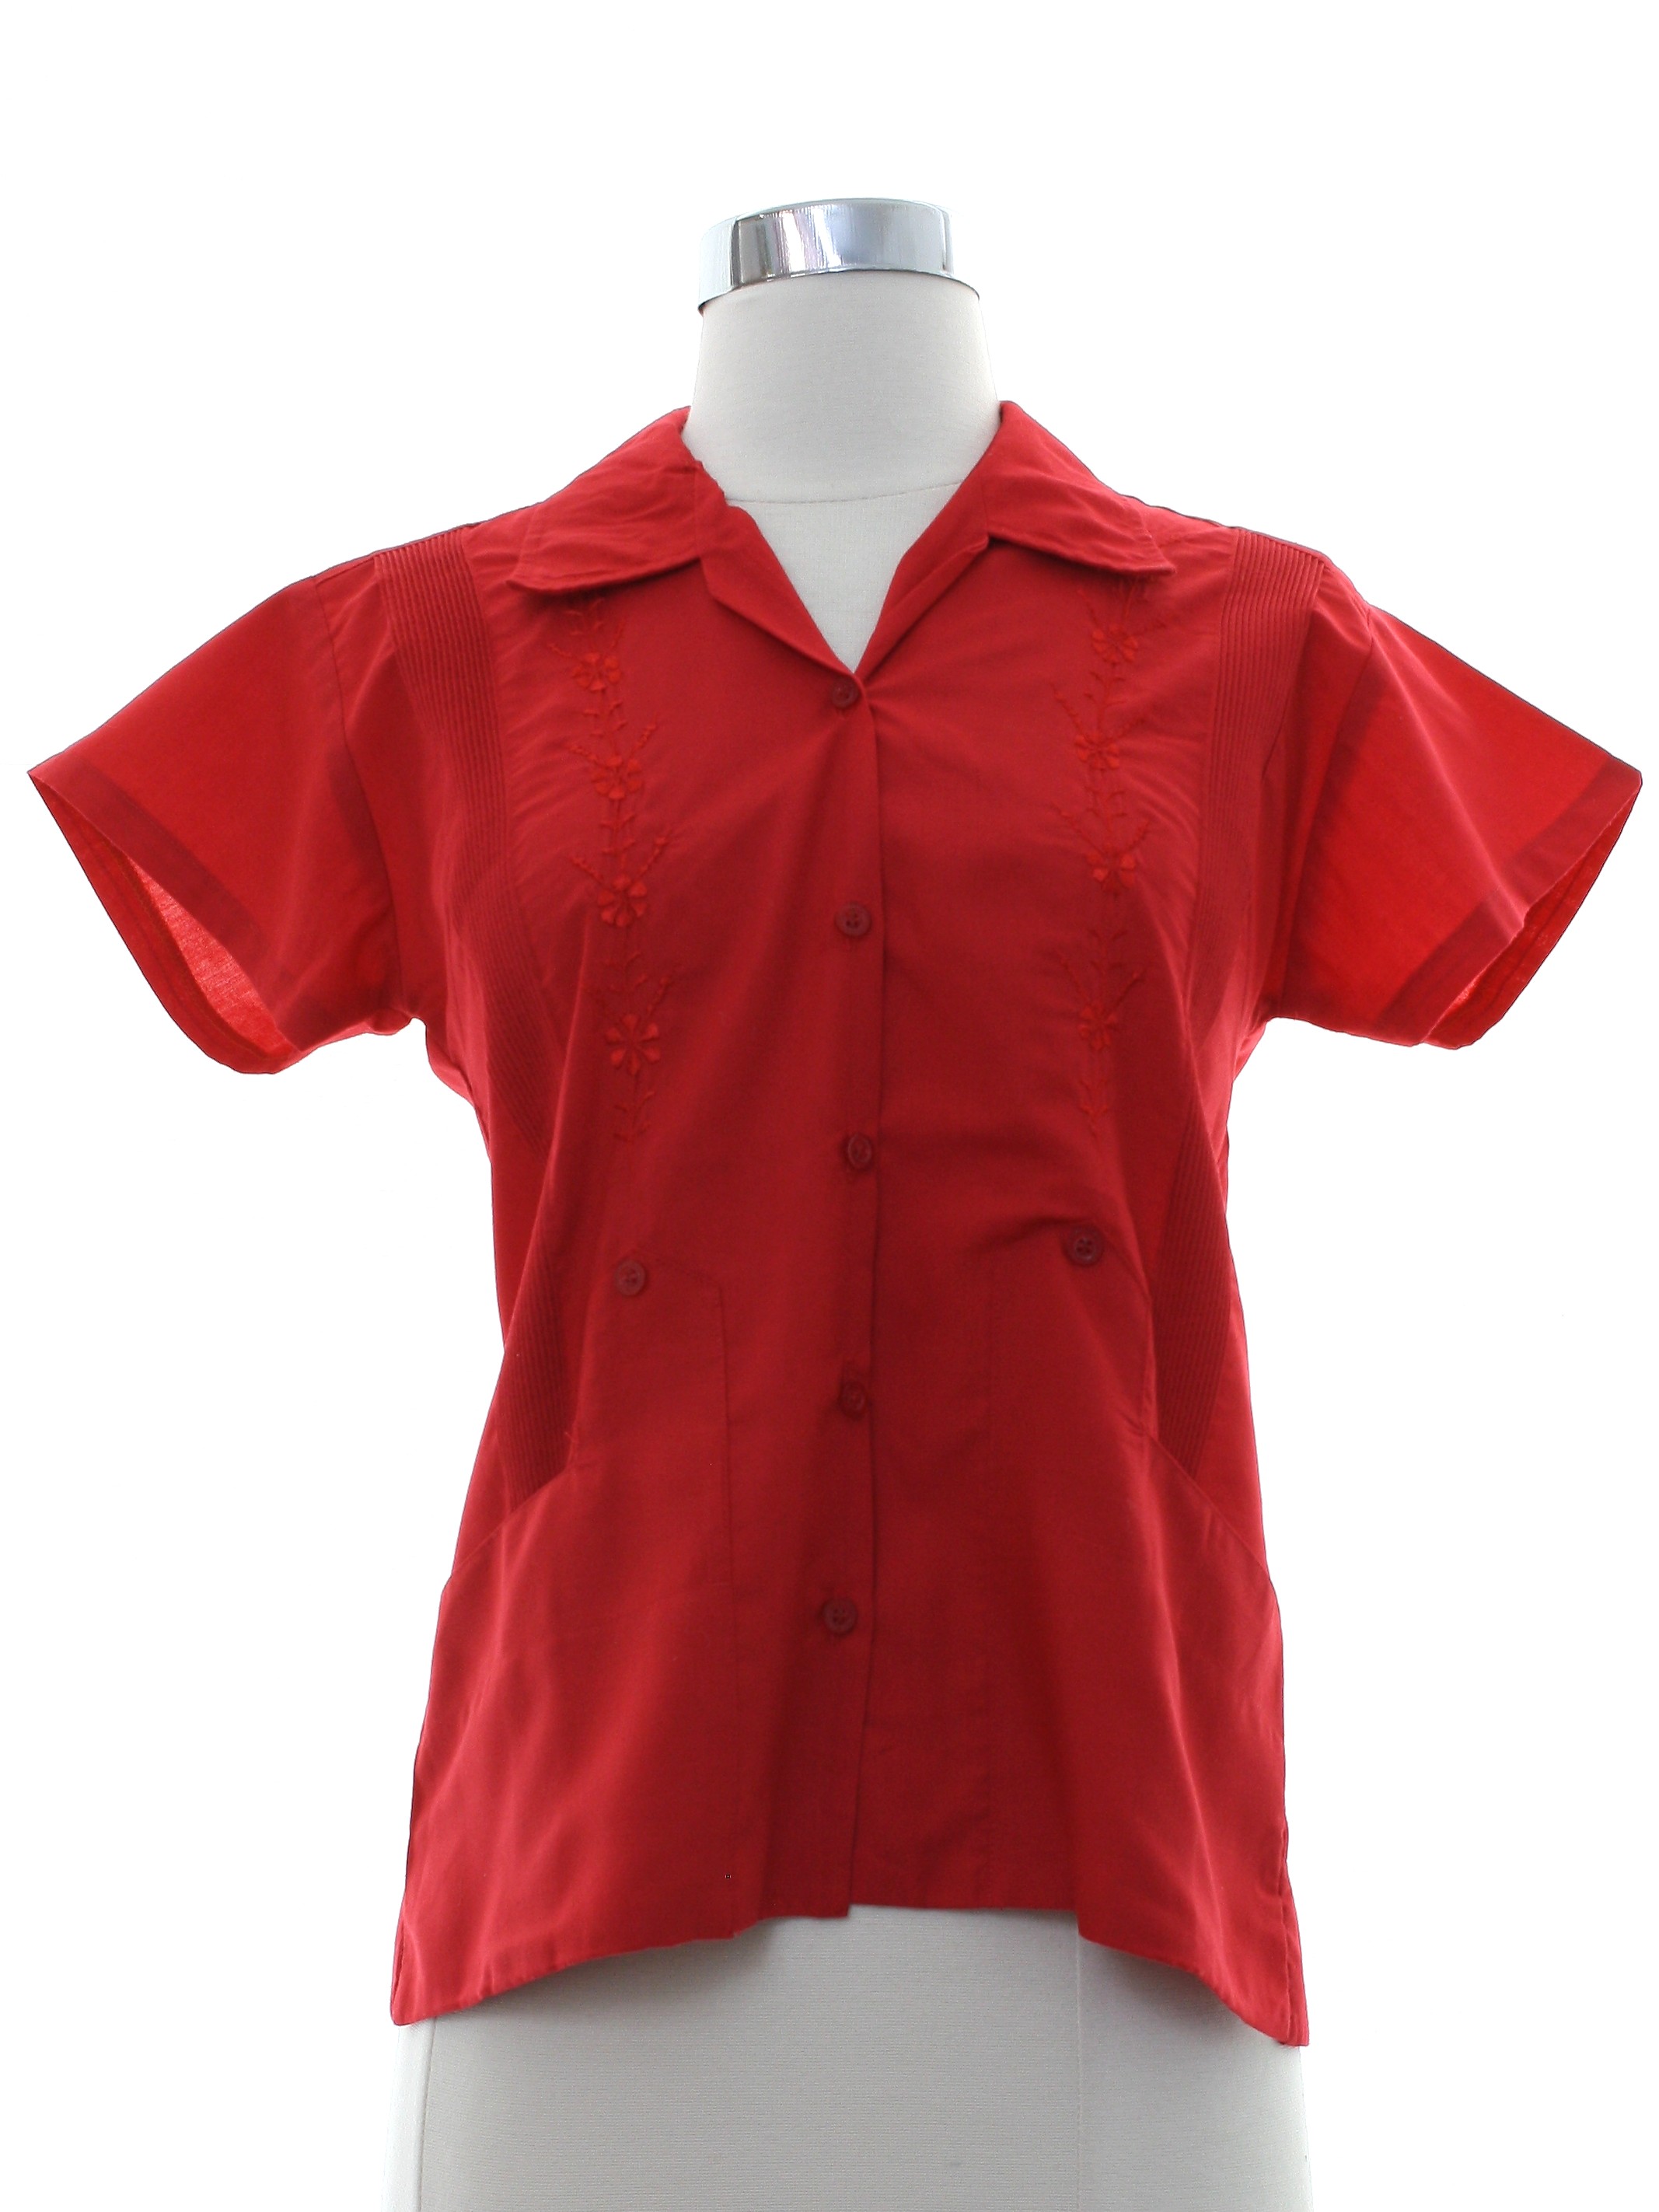 size small apple red button up dress shirt women